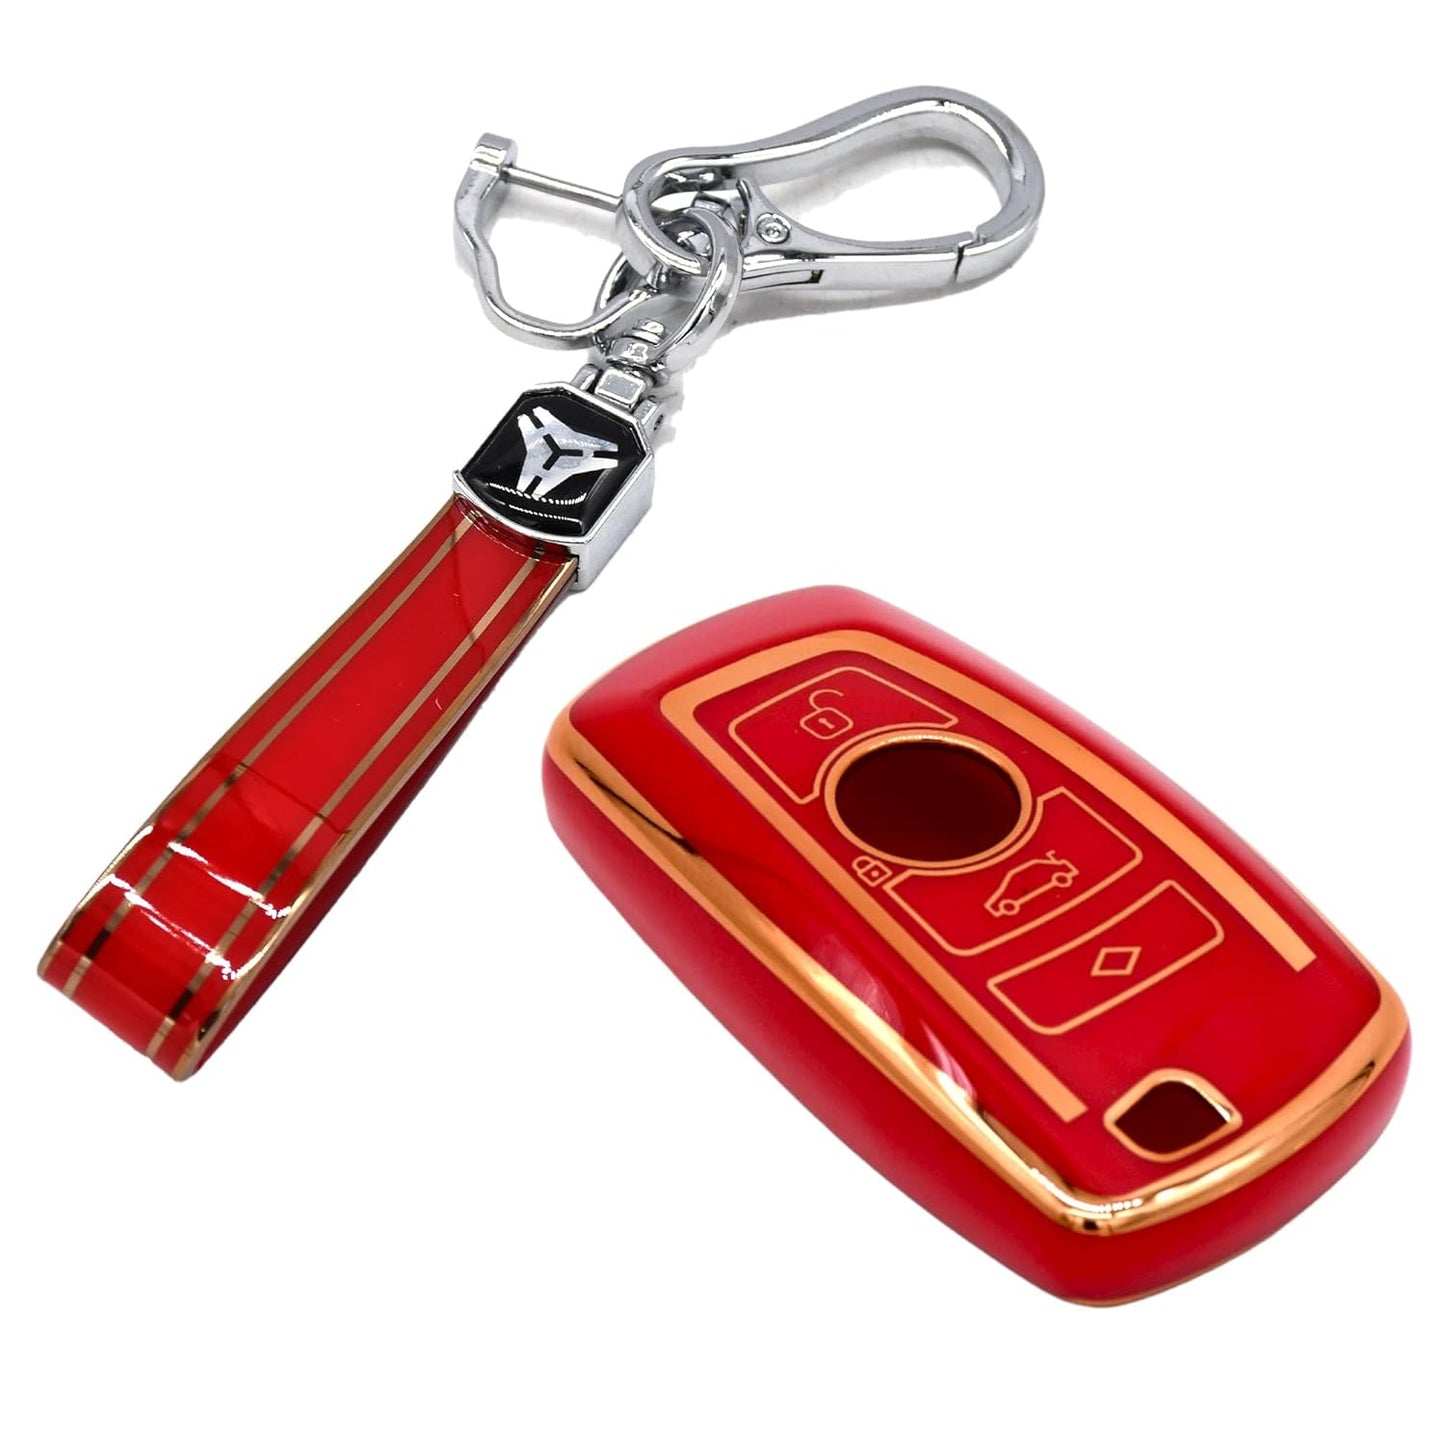 Keyzone TPU Key Cover and Keychain For BMW : X1, X3, X6, X5, 5 Series,